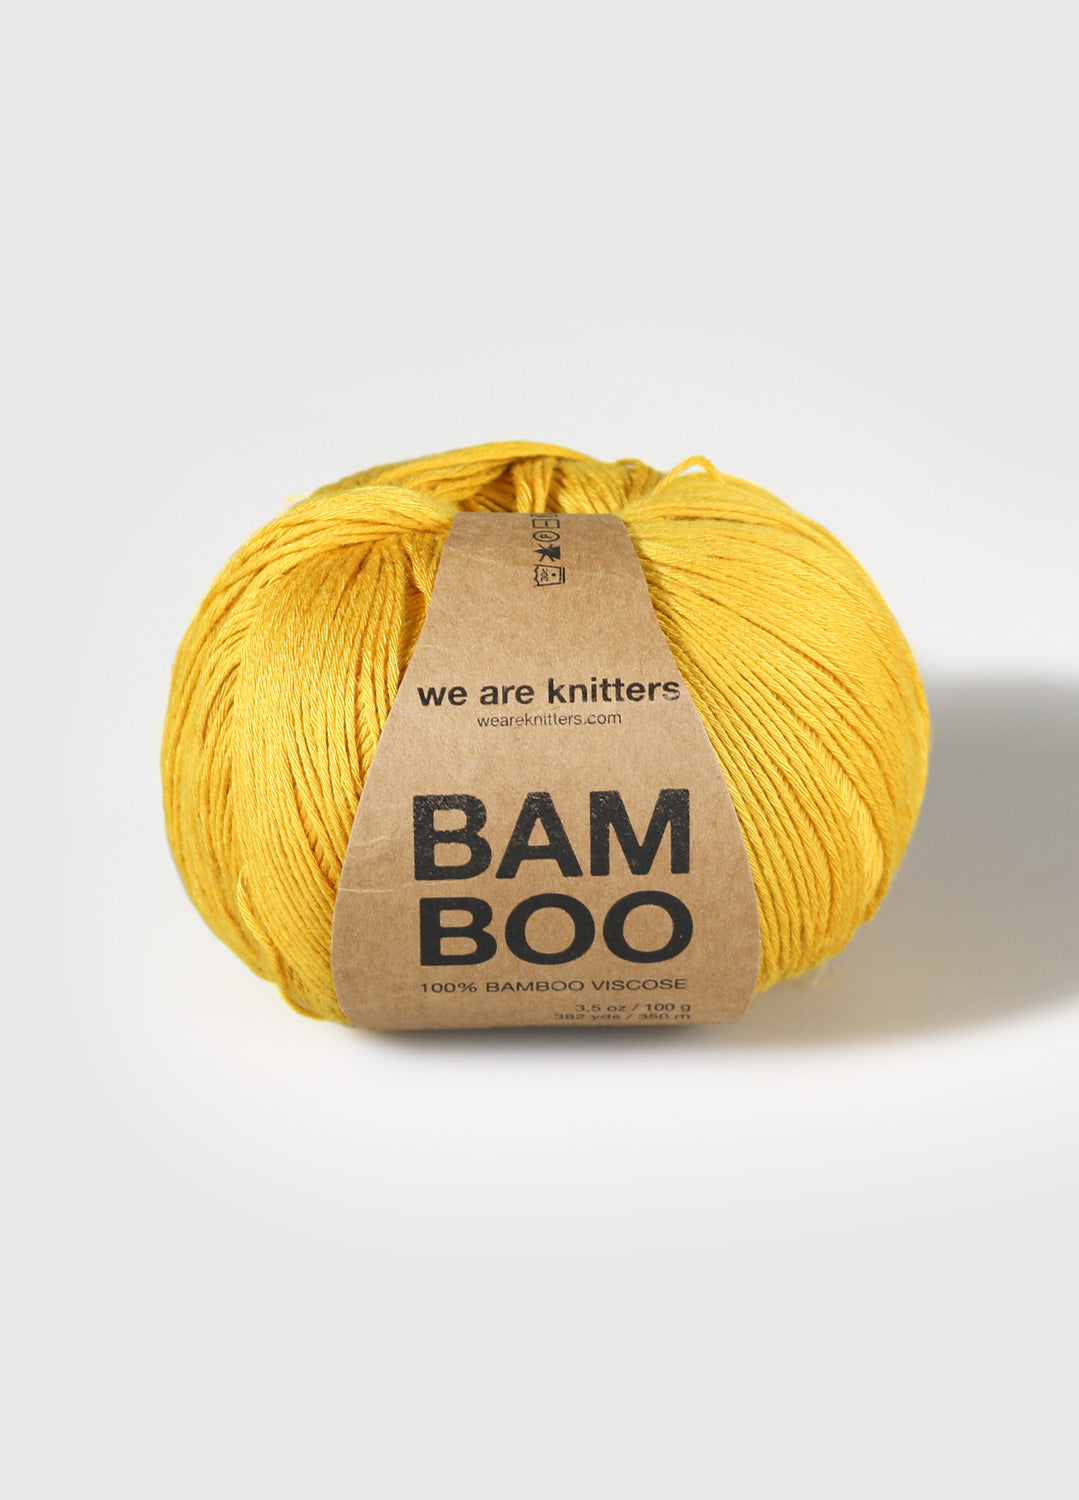 Pelotes fil crochet jaune x6 - 100gr multicolor - 100% Coton